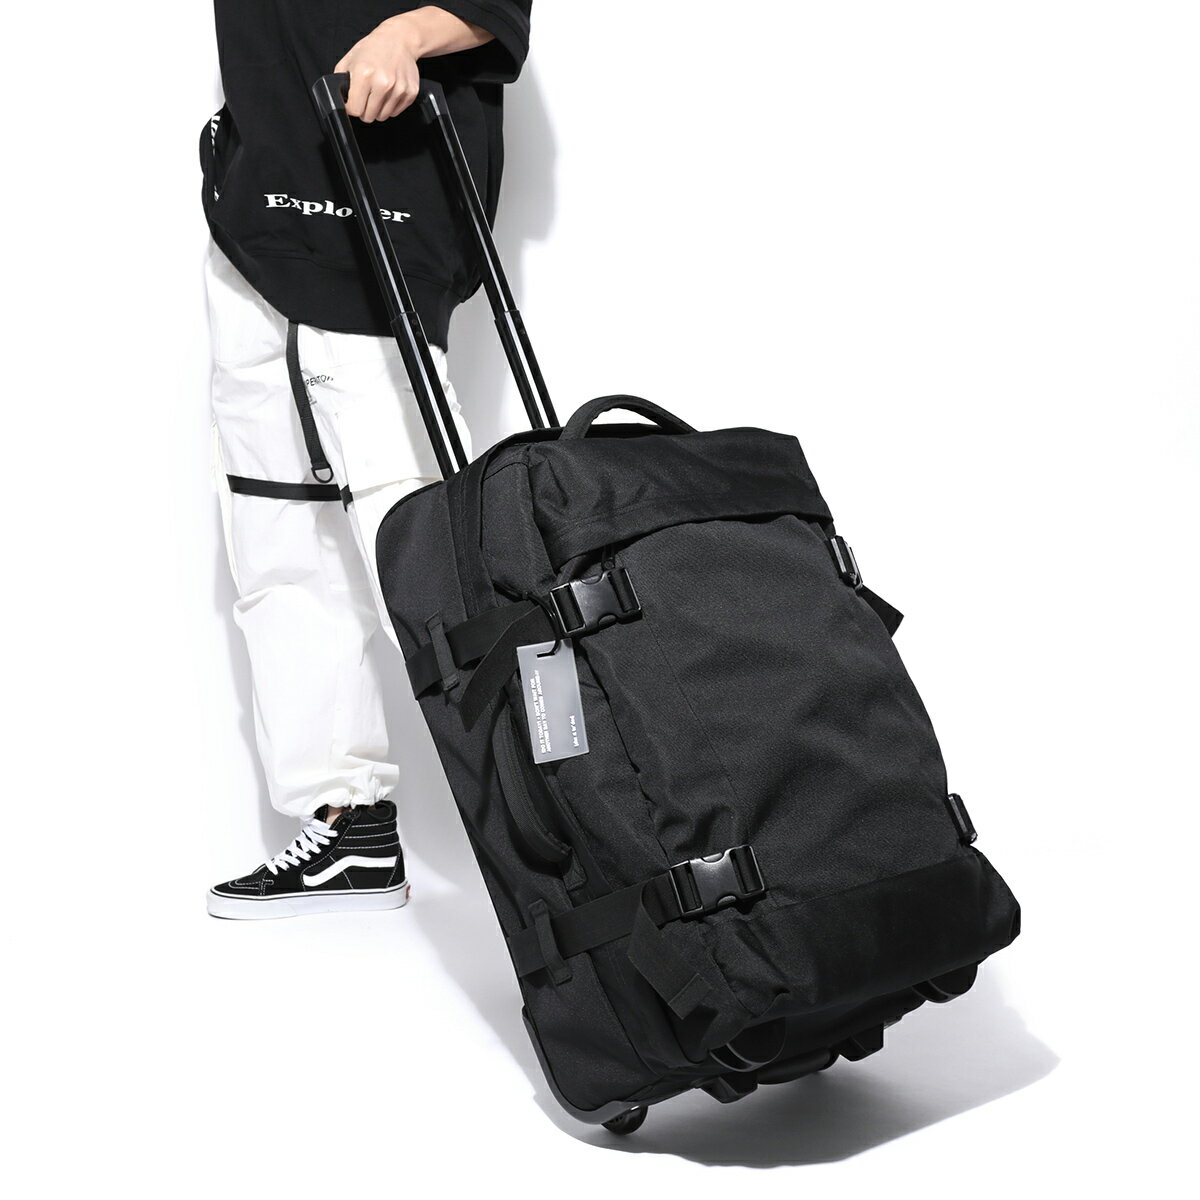 拉桿包 旅行包 旅行袋 後背包 拉桿包旅游男女手提旅行袋韓版大容量行李包托運包輕便時尚拉桿箱 全館免運